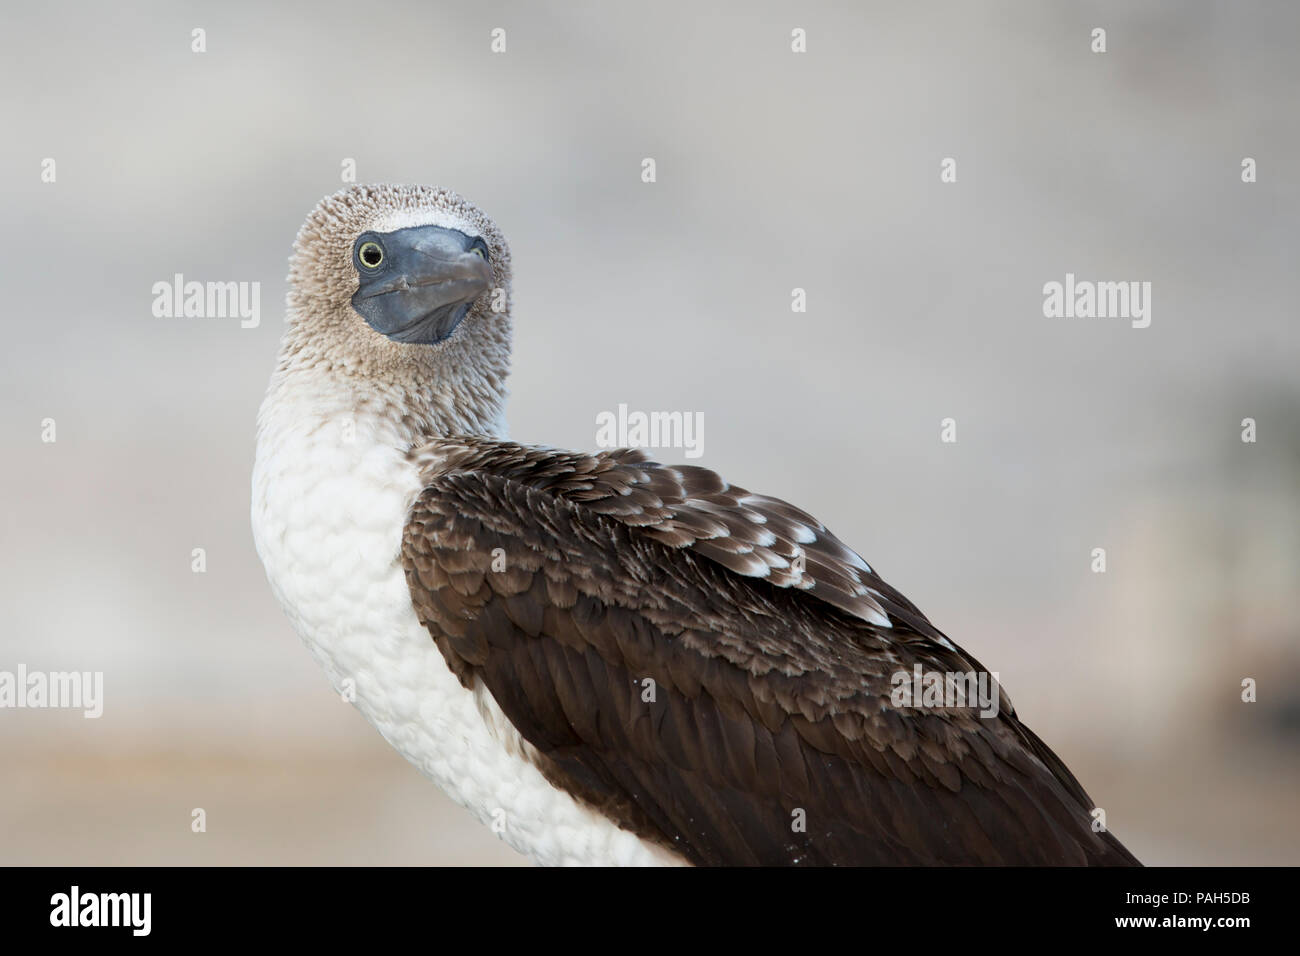 Blue-footed booby, Isla Lobos de Tierra, Peru Stock Photo